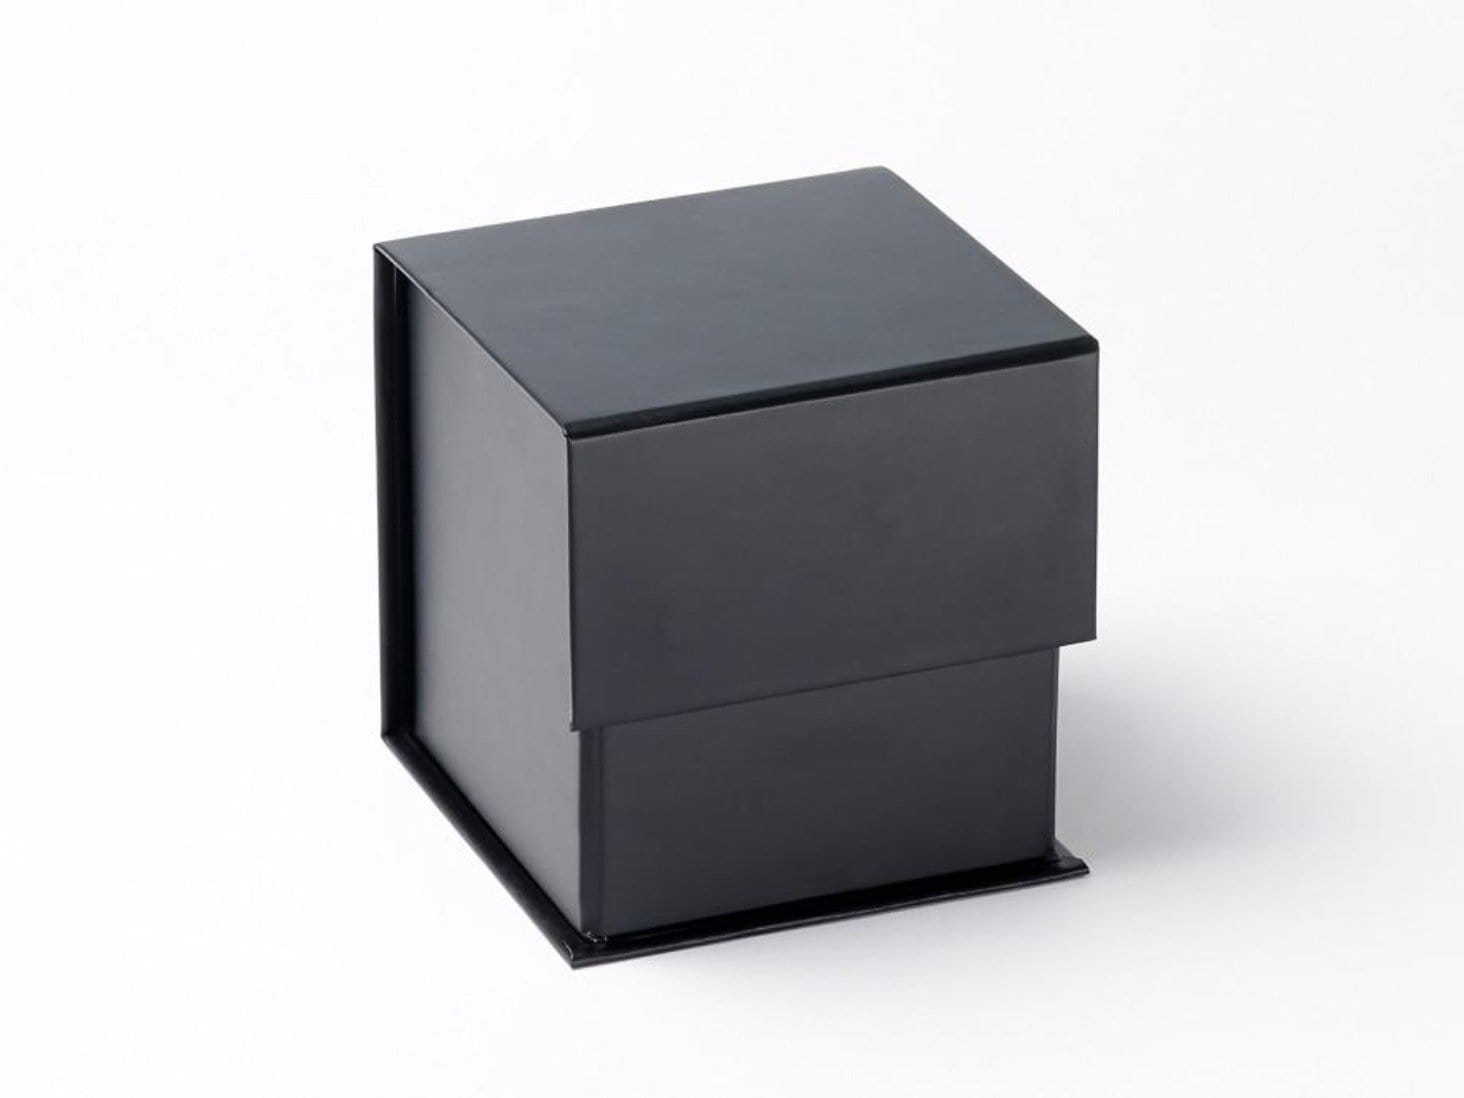 Foldabox UK Large Black 5" Cube Folding Magnetic Gift Box